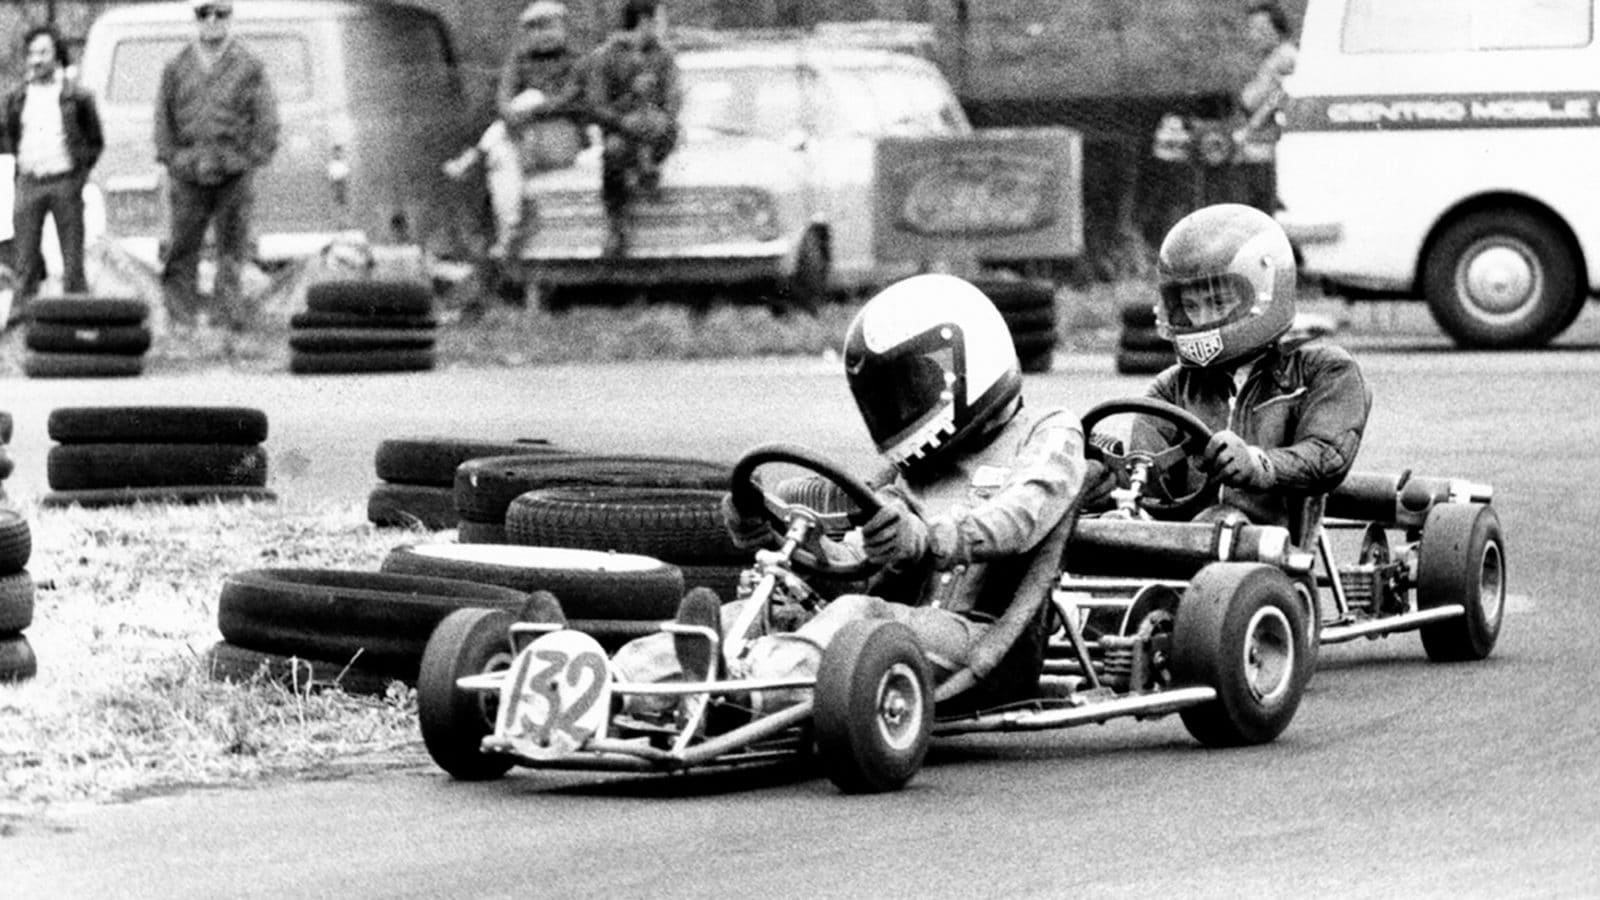 Emanuele Pirro leads Andrea de Angelis in a 1976 kart race